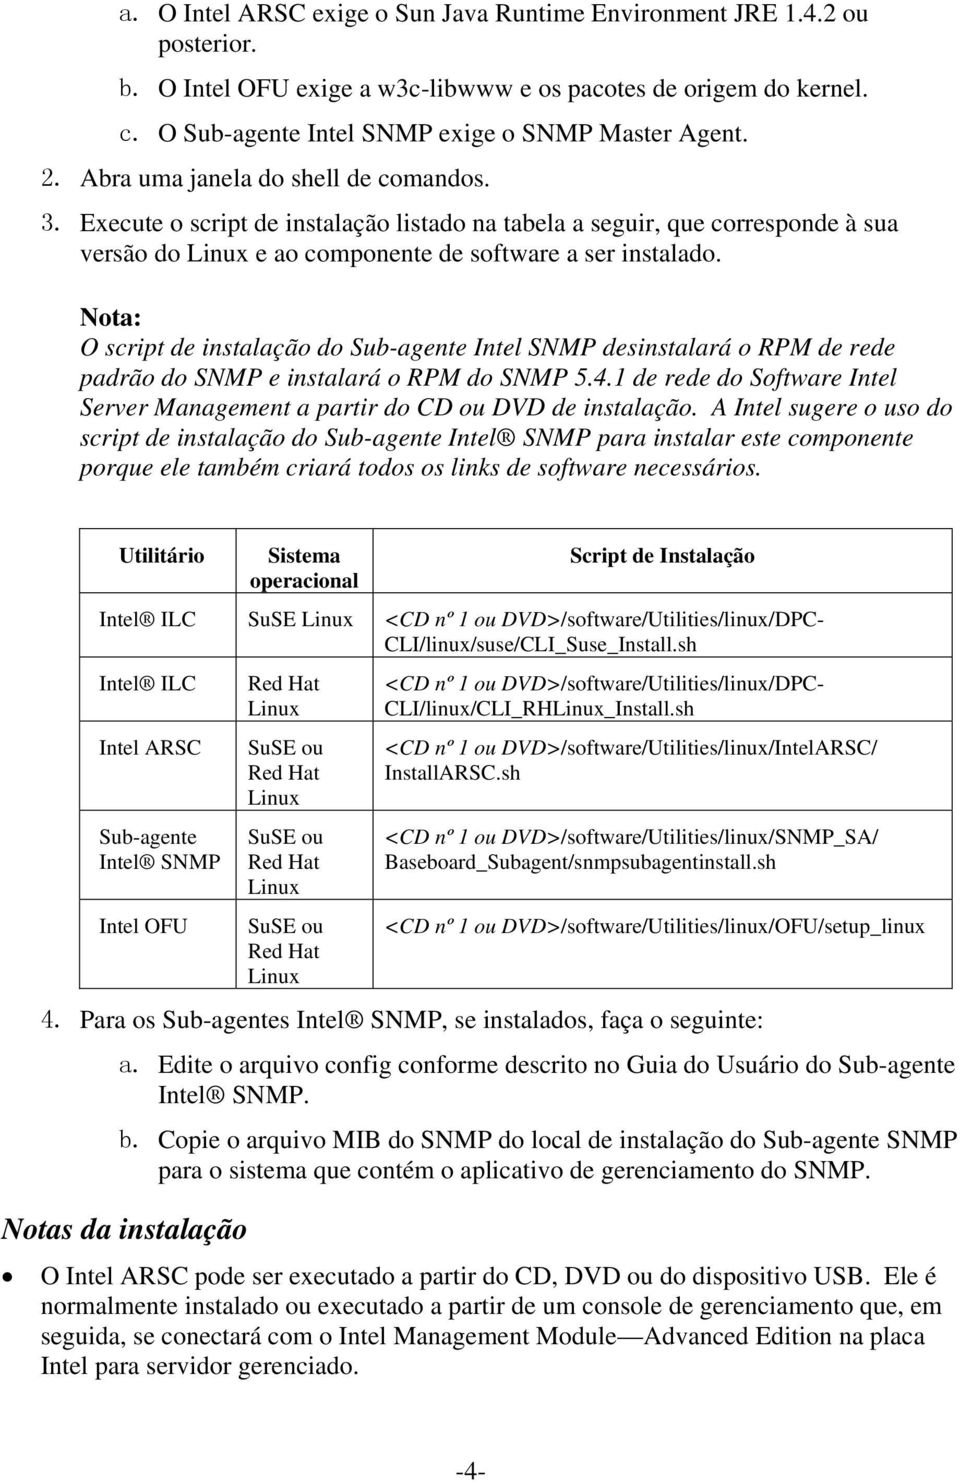 Nota: O script de instalação do Sub-agente Intel SNMP desinstalará o RPM de rede padrão do SNMP e instalará o RPM do SNMP 5.4.